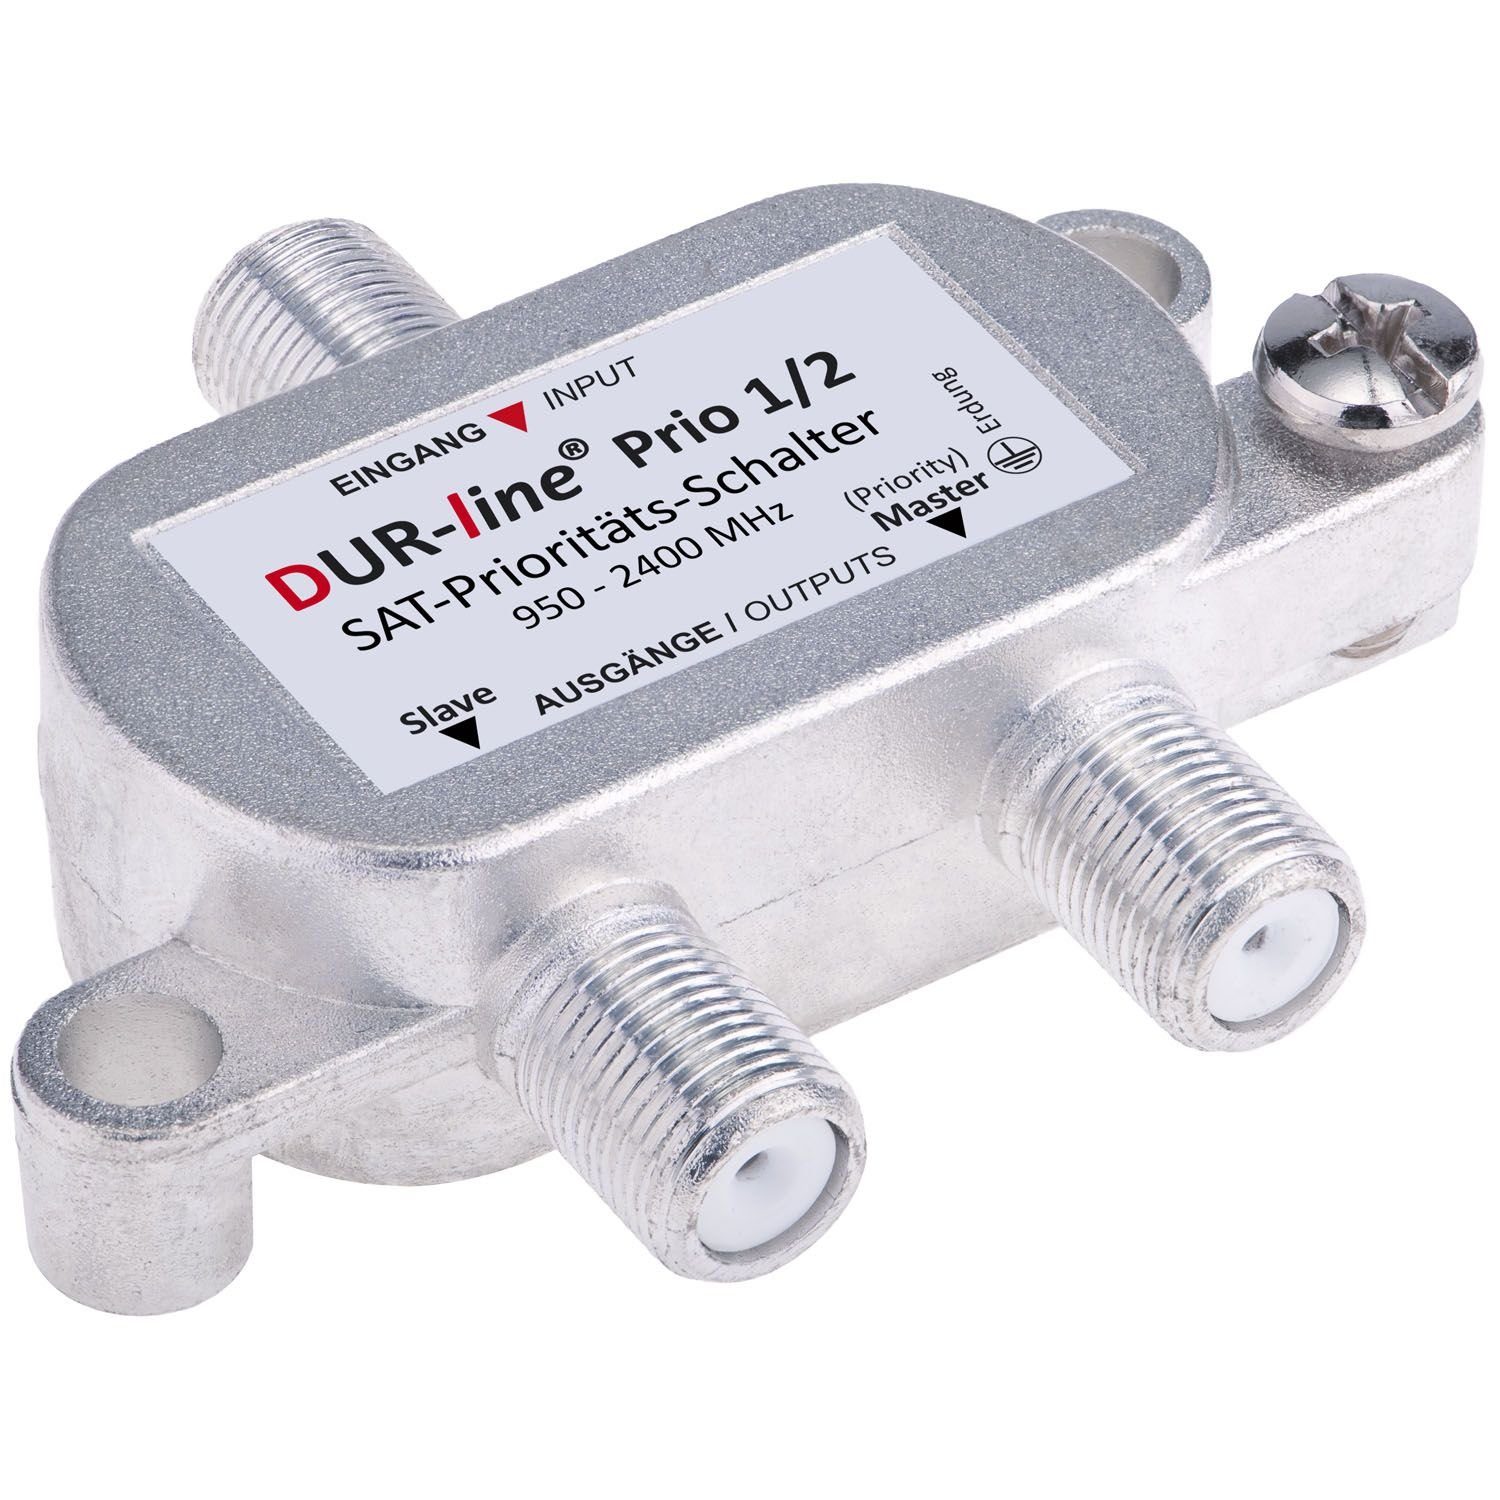 DUR-line DUR-line Prio 1/2 - SAT-Prioritäts-Schalter SAT-Kabel